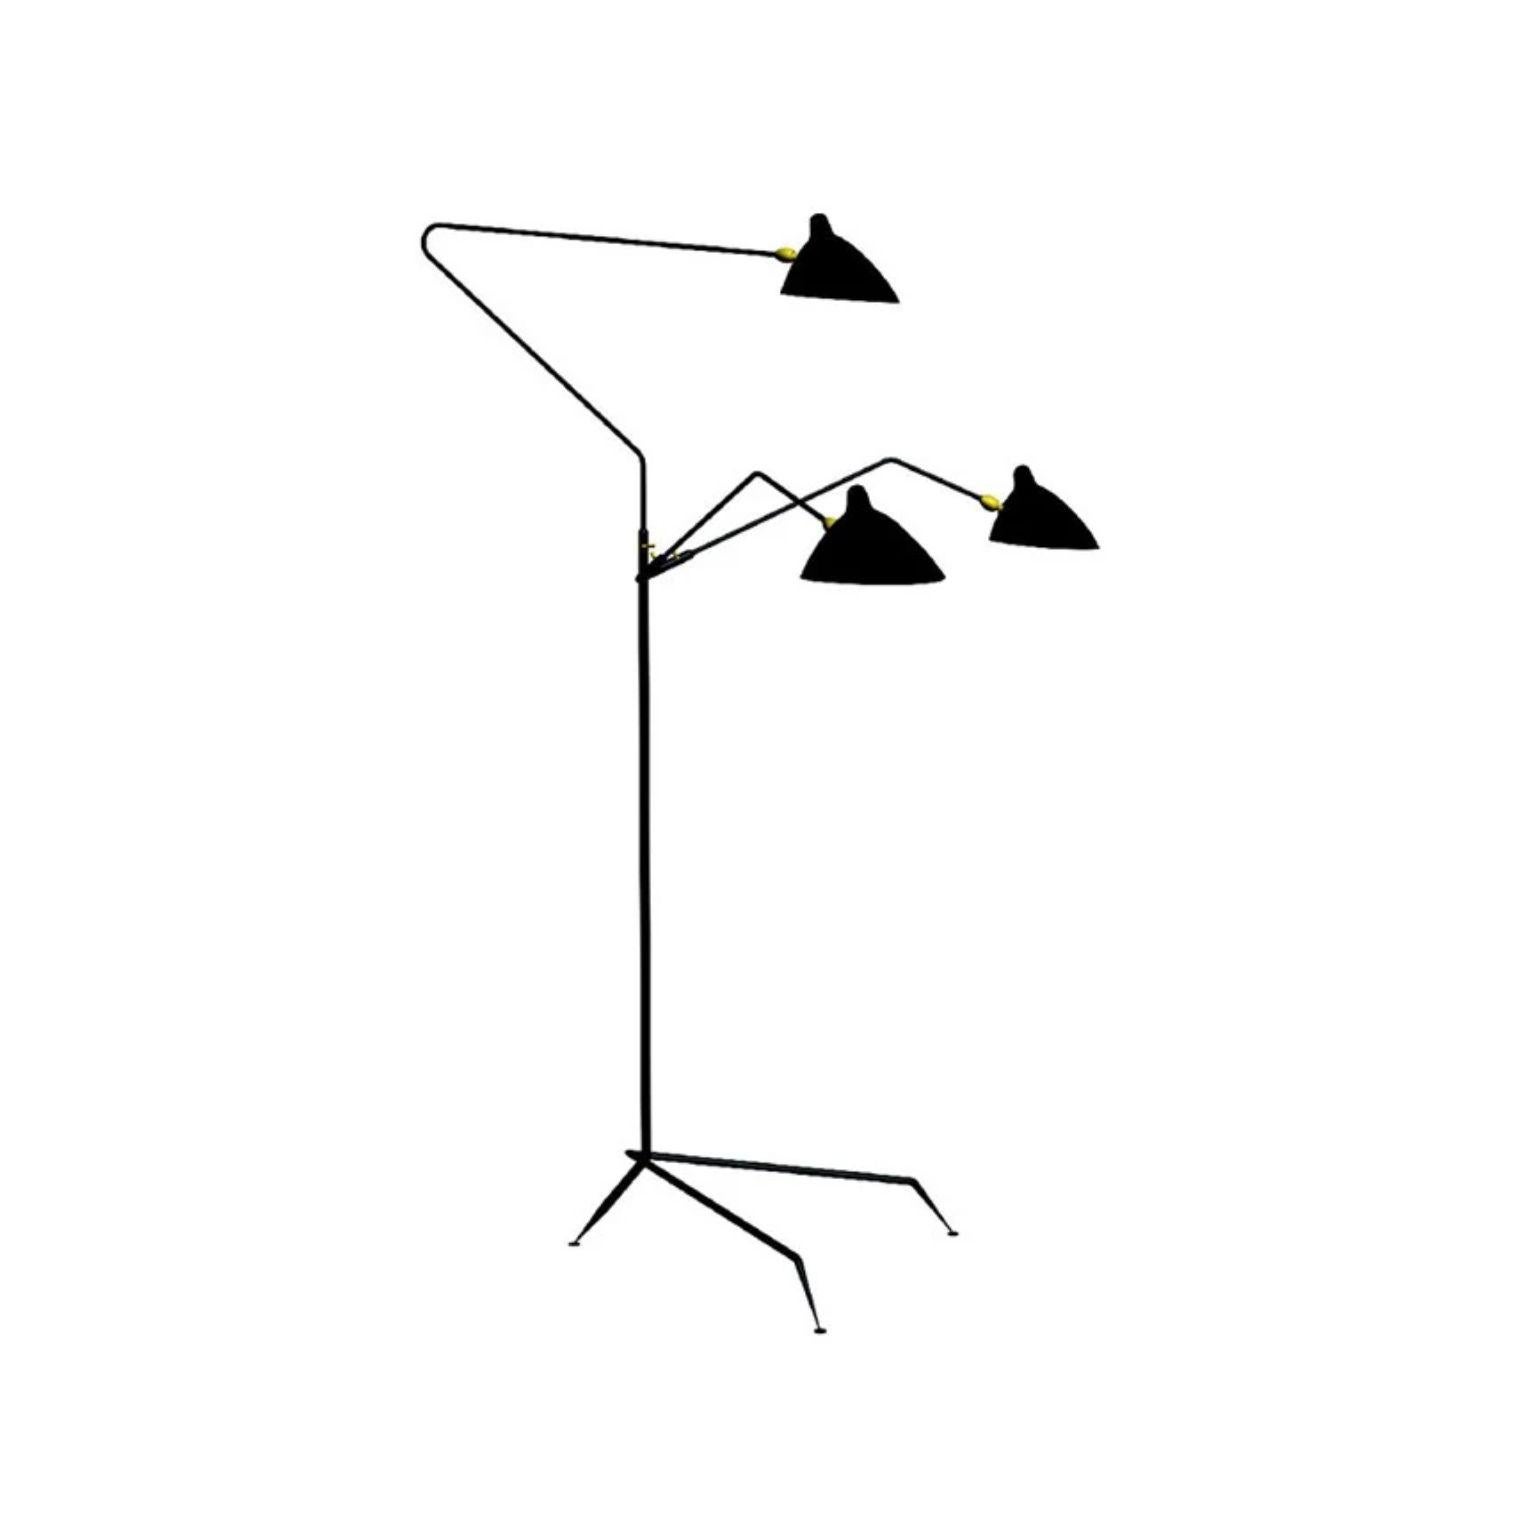 Lampe sur pied 3 bras rotatifs par Serge Mouille
Dimensions : D135 x L145 x H210 cm
MATERIAL : Laiton, acier, aluminium
Unique en son genre, numéroté.
Disponible également en différentes couleurs.

Toutes nos lampes peuvent être câblées en